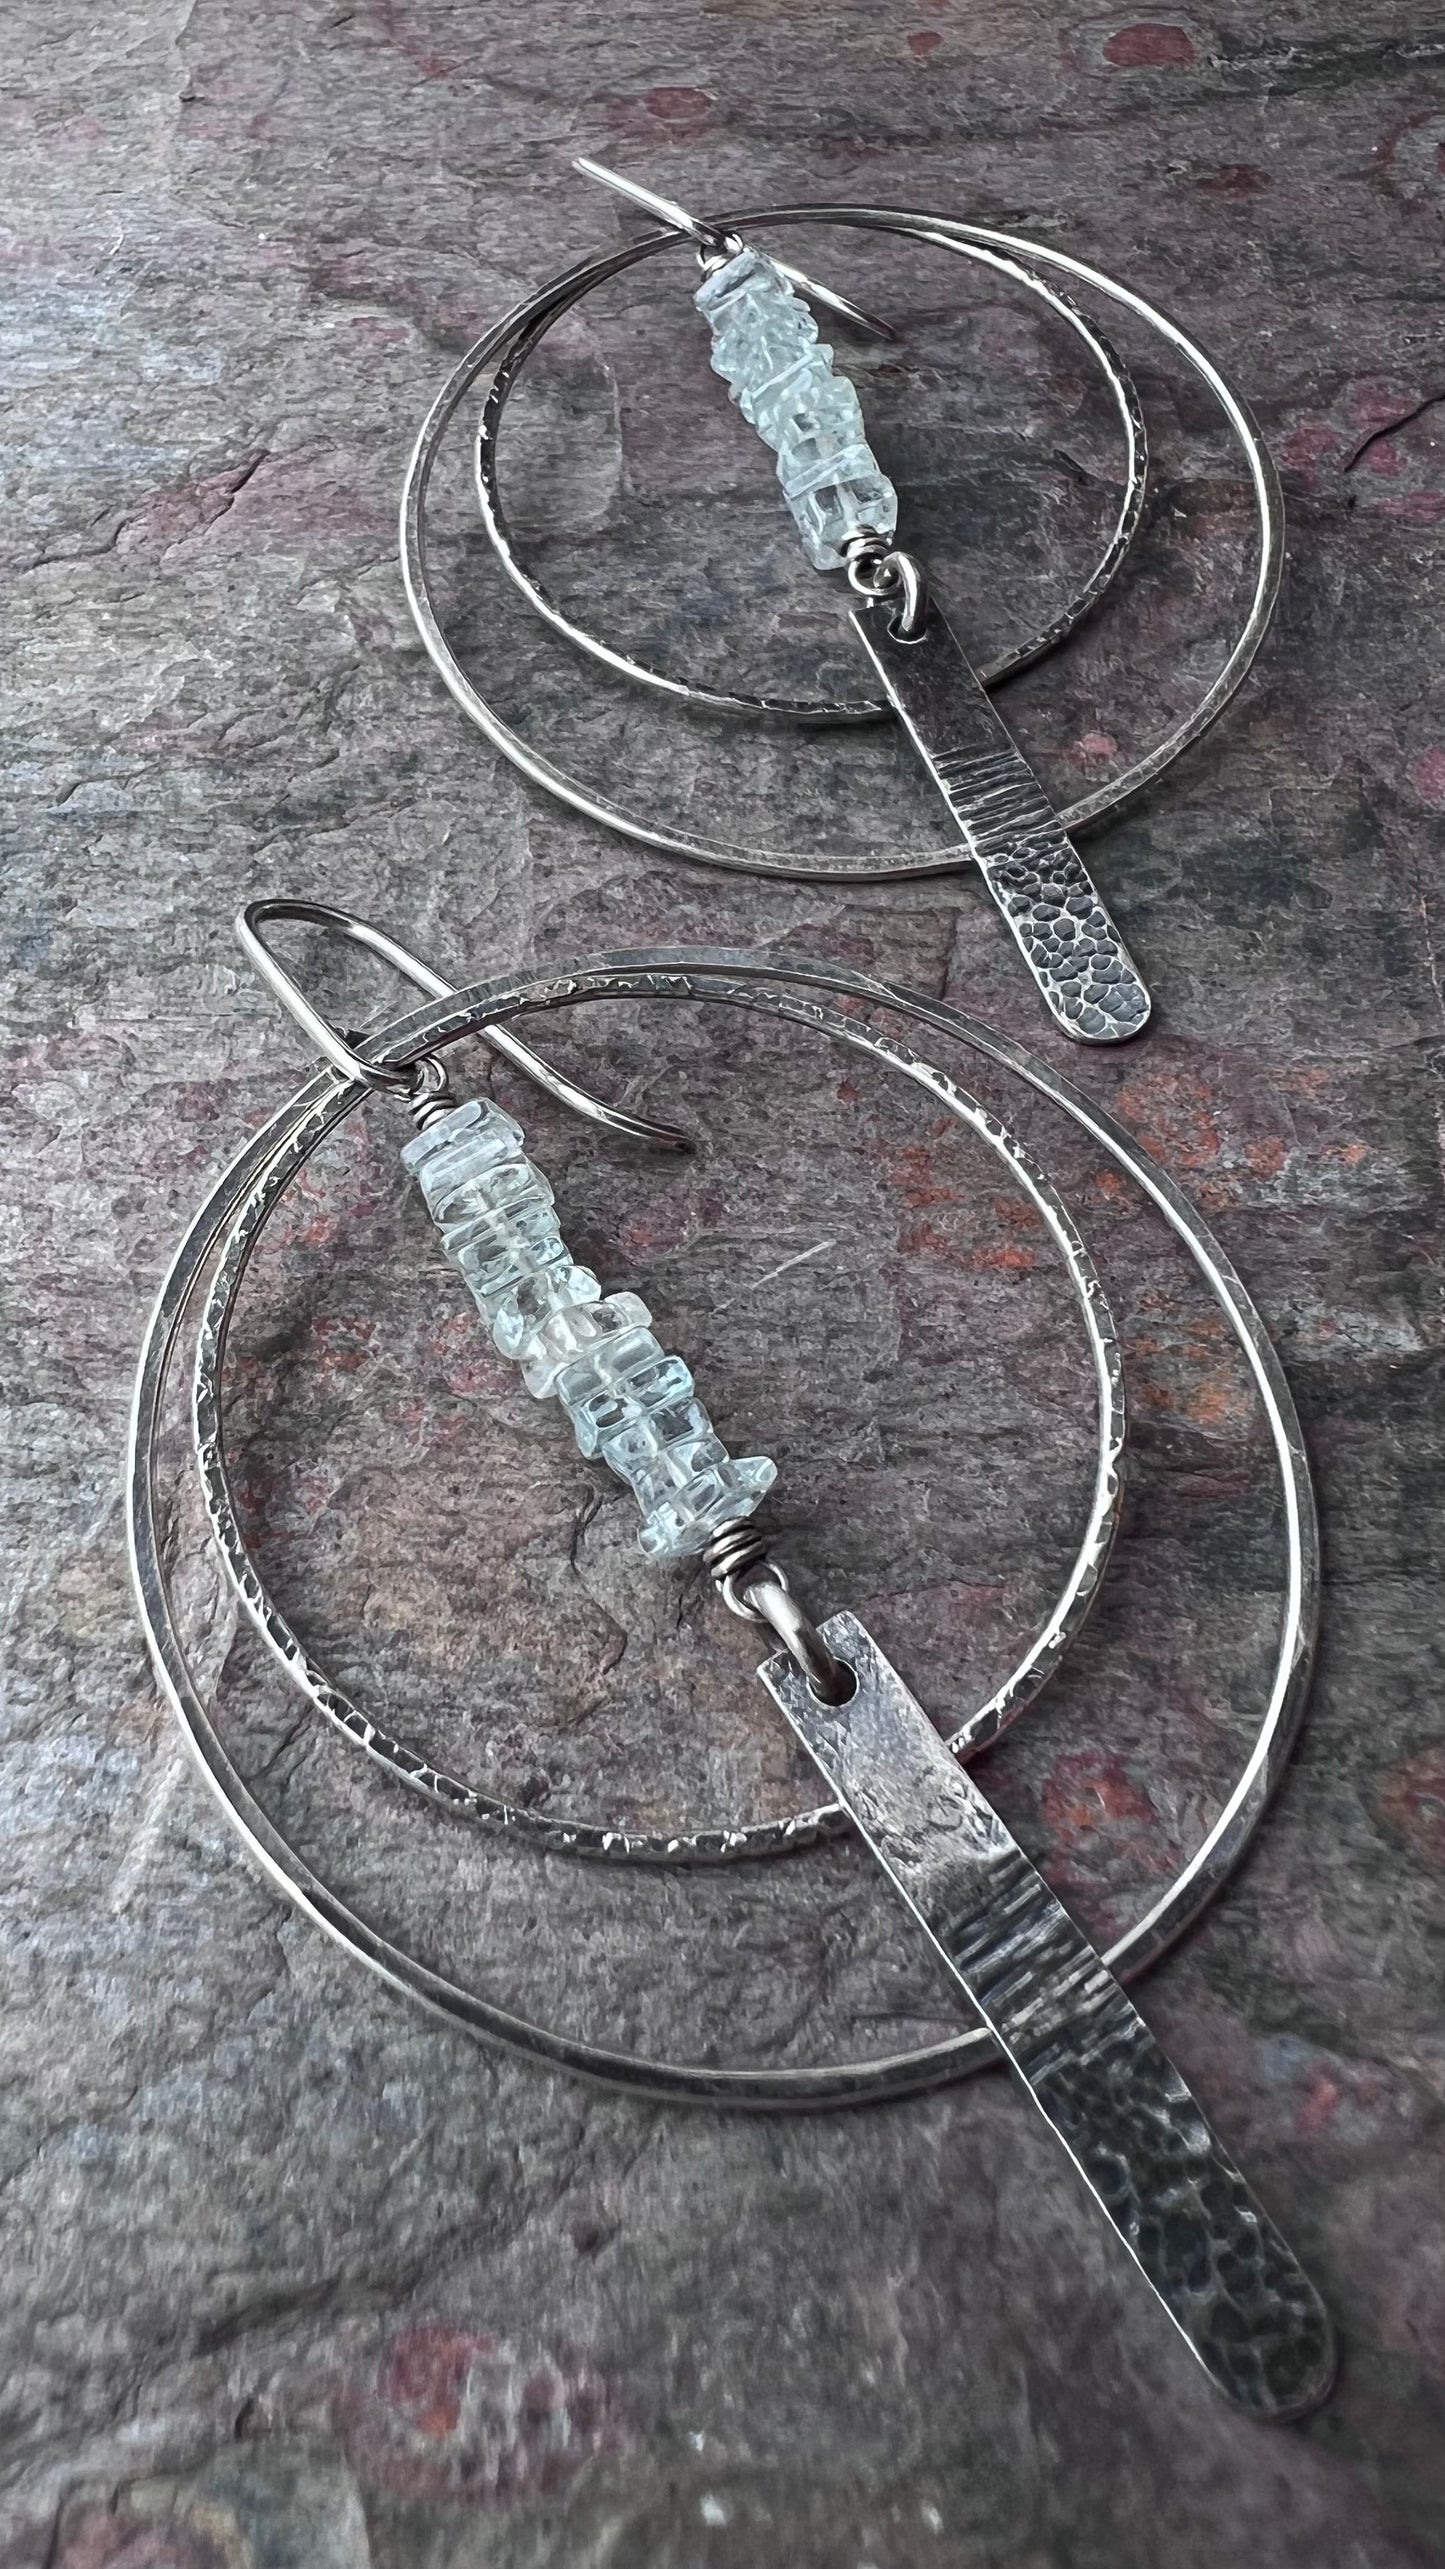 Aquamarine Sterling Silver Earrings - Genuine Aquamarine and Hammered Bars in Sterling Silver Hoop Earrings